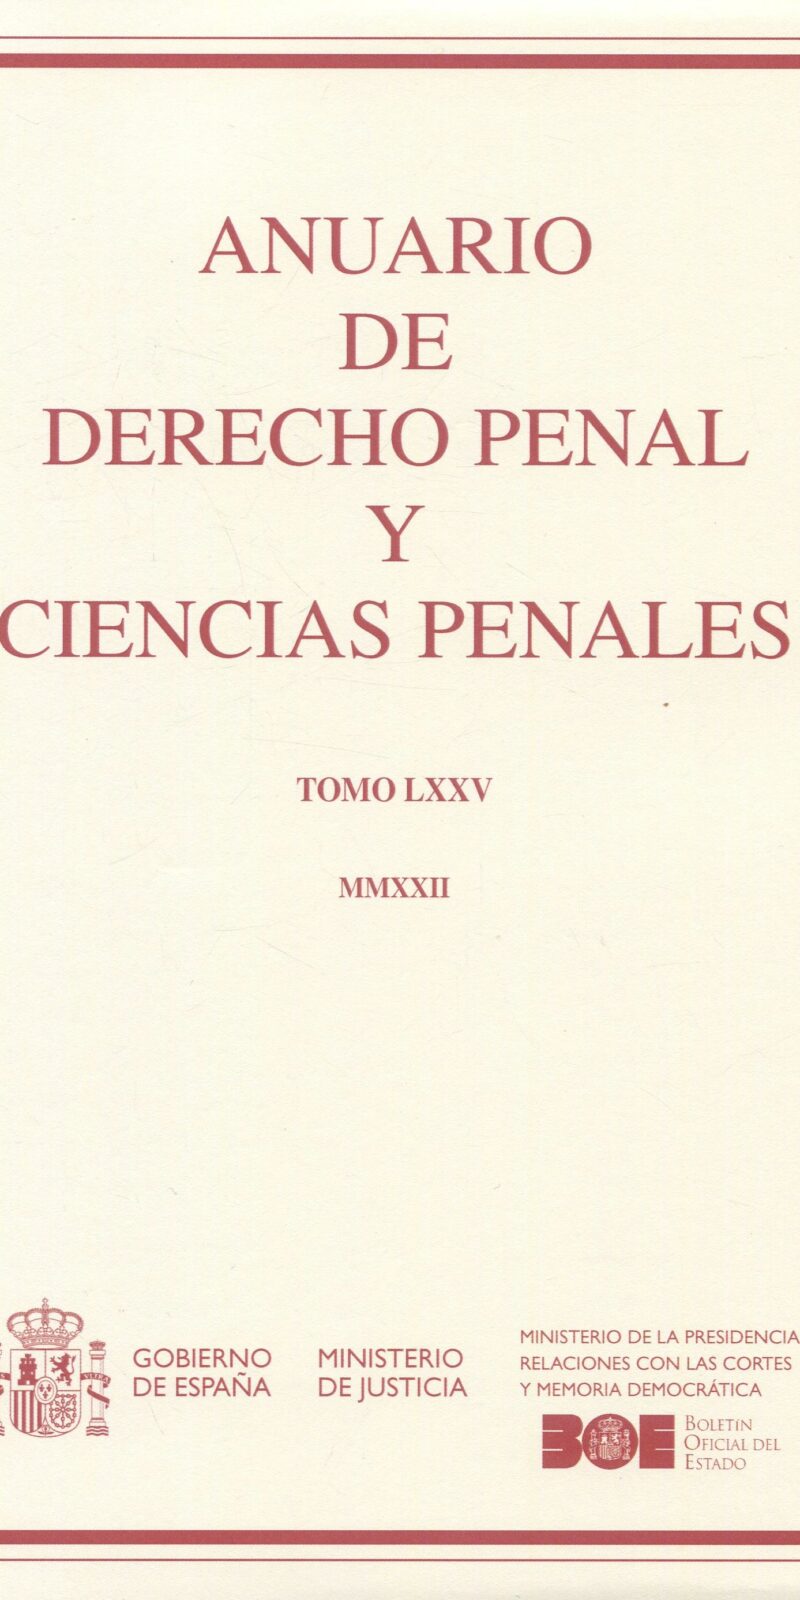 Anuario Derecho penal ciencias penales 75 9772202103001